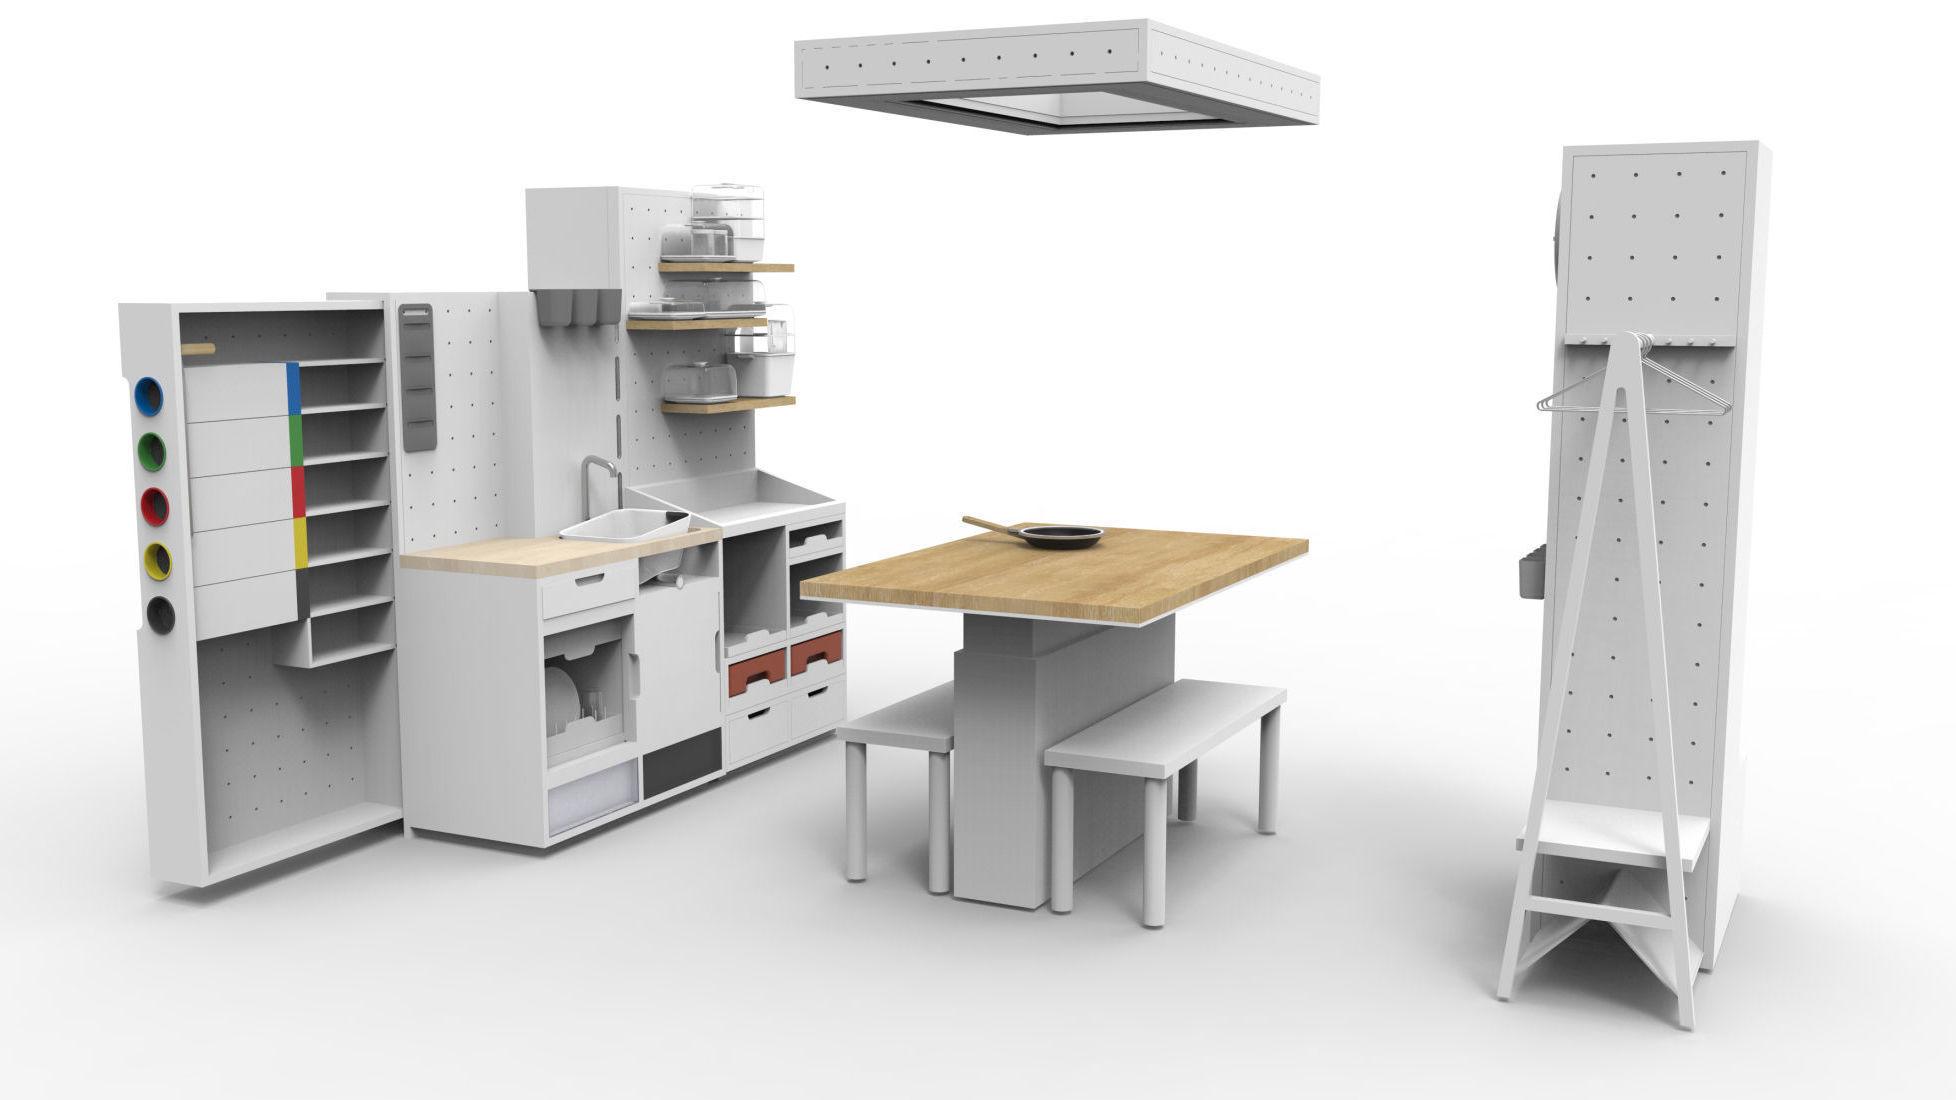 MODERNE: Kjøkkenet, som kun er i planleggingsfasen, har et minimalistisk og moderne utseende. Foto: IKEA